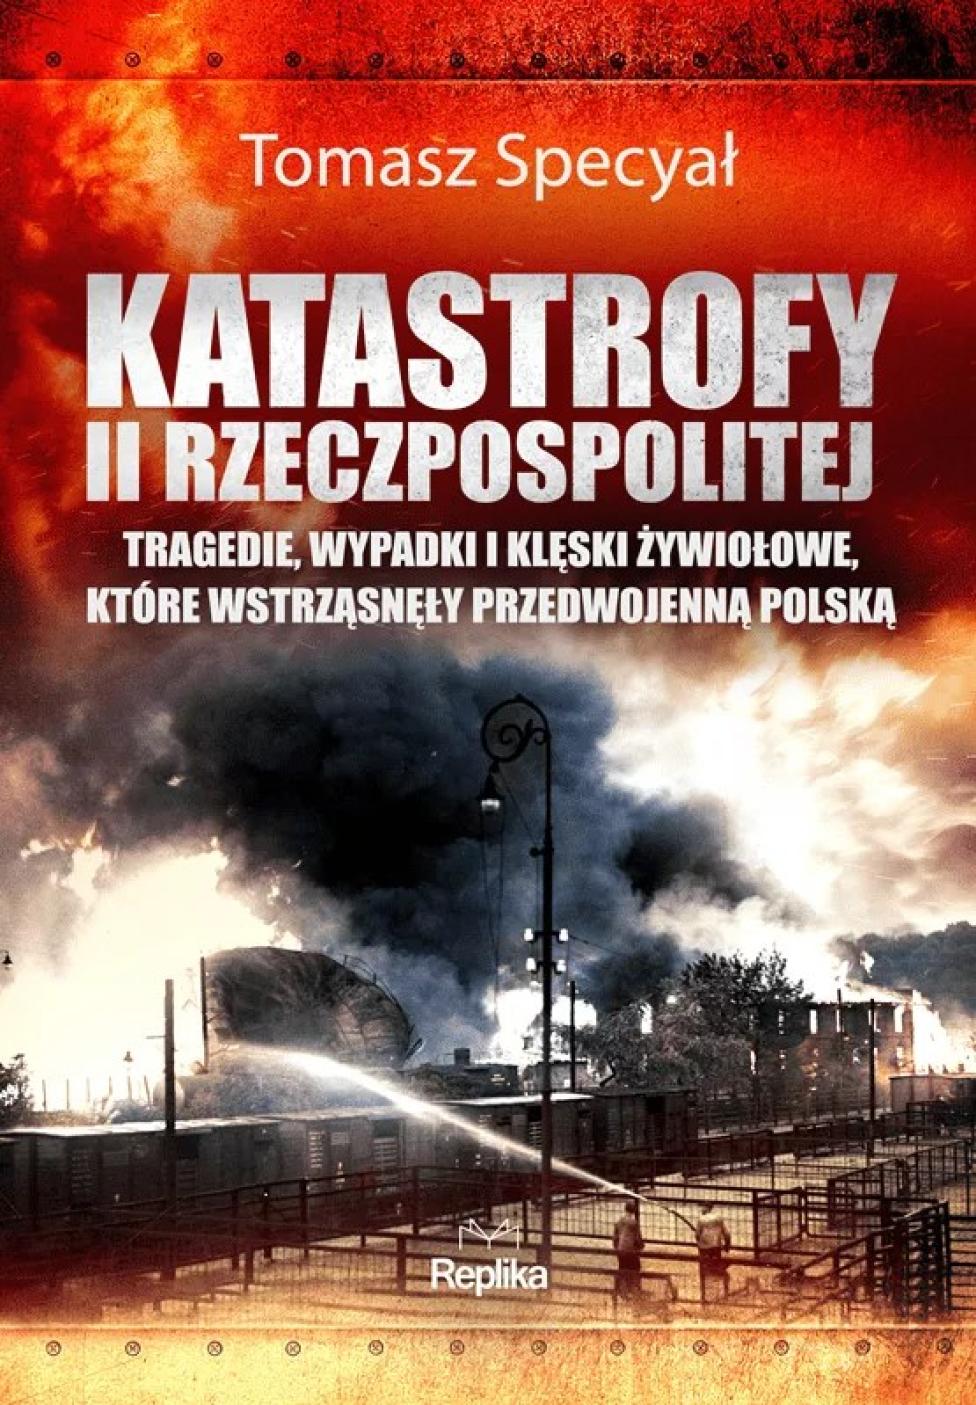 Katastrofy II Rzeczpospolitej Tragedie, wypadki i klęski żywiołowe, które wstrząsnęły przedwojenną Polską (fot. Wydawnictwo Replika)